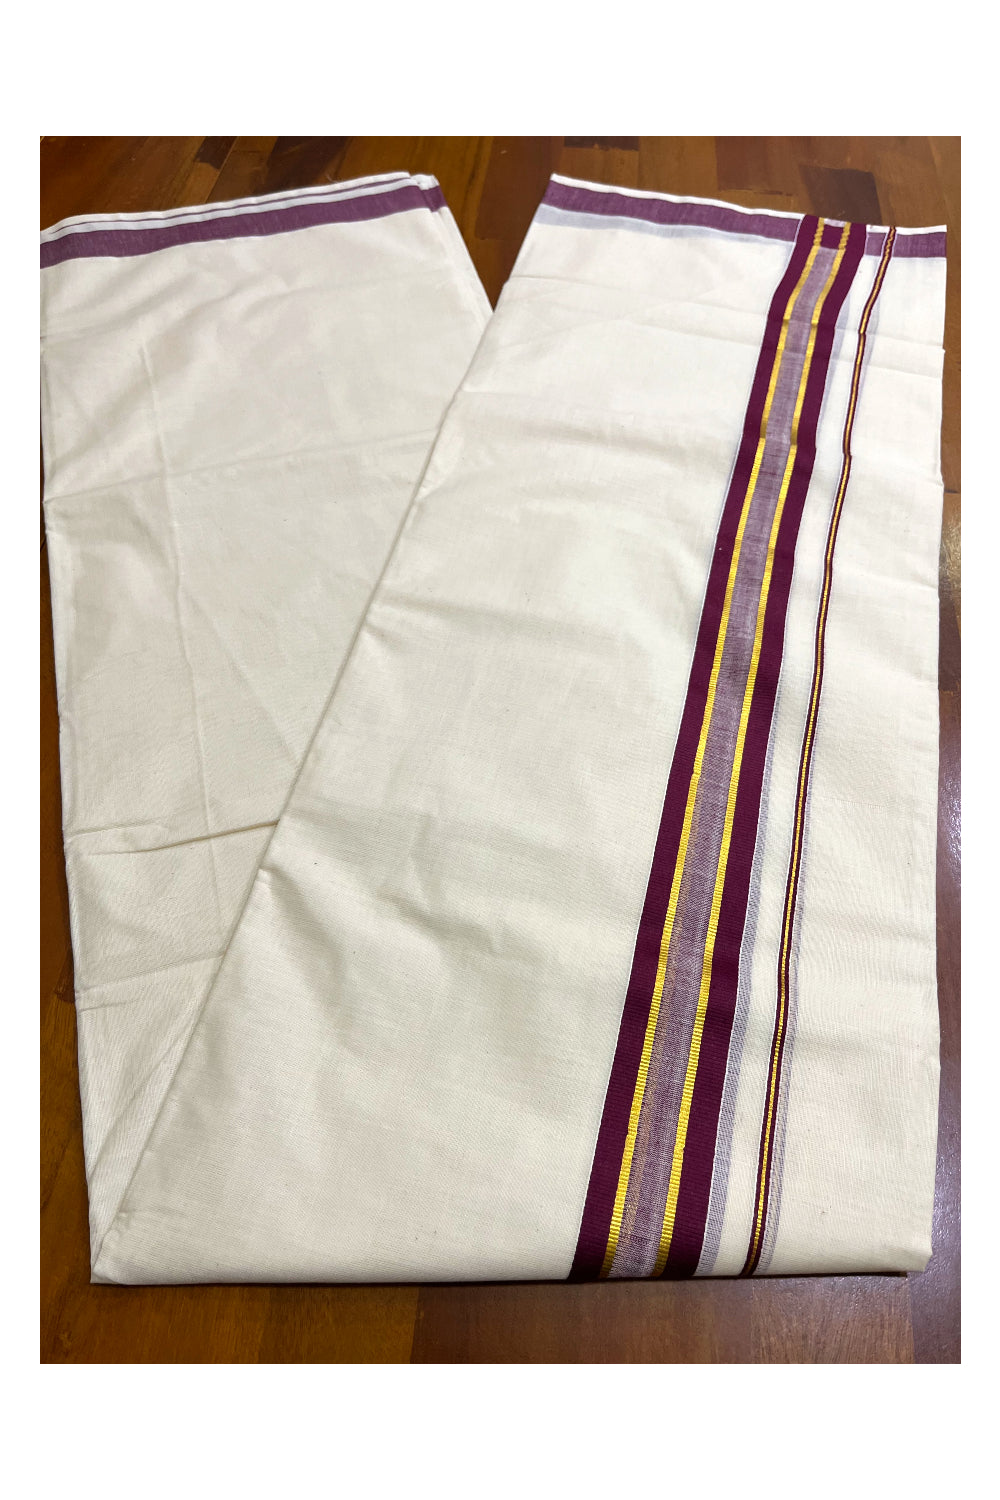 Kerala Pure Cotton Double Mundu with Kasavu And Purple Border (South Indian Kerala Dhoti)